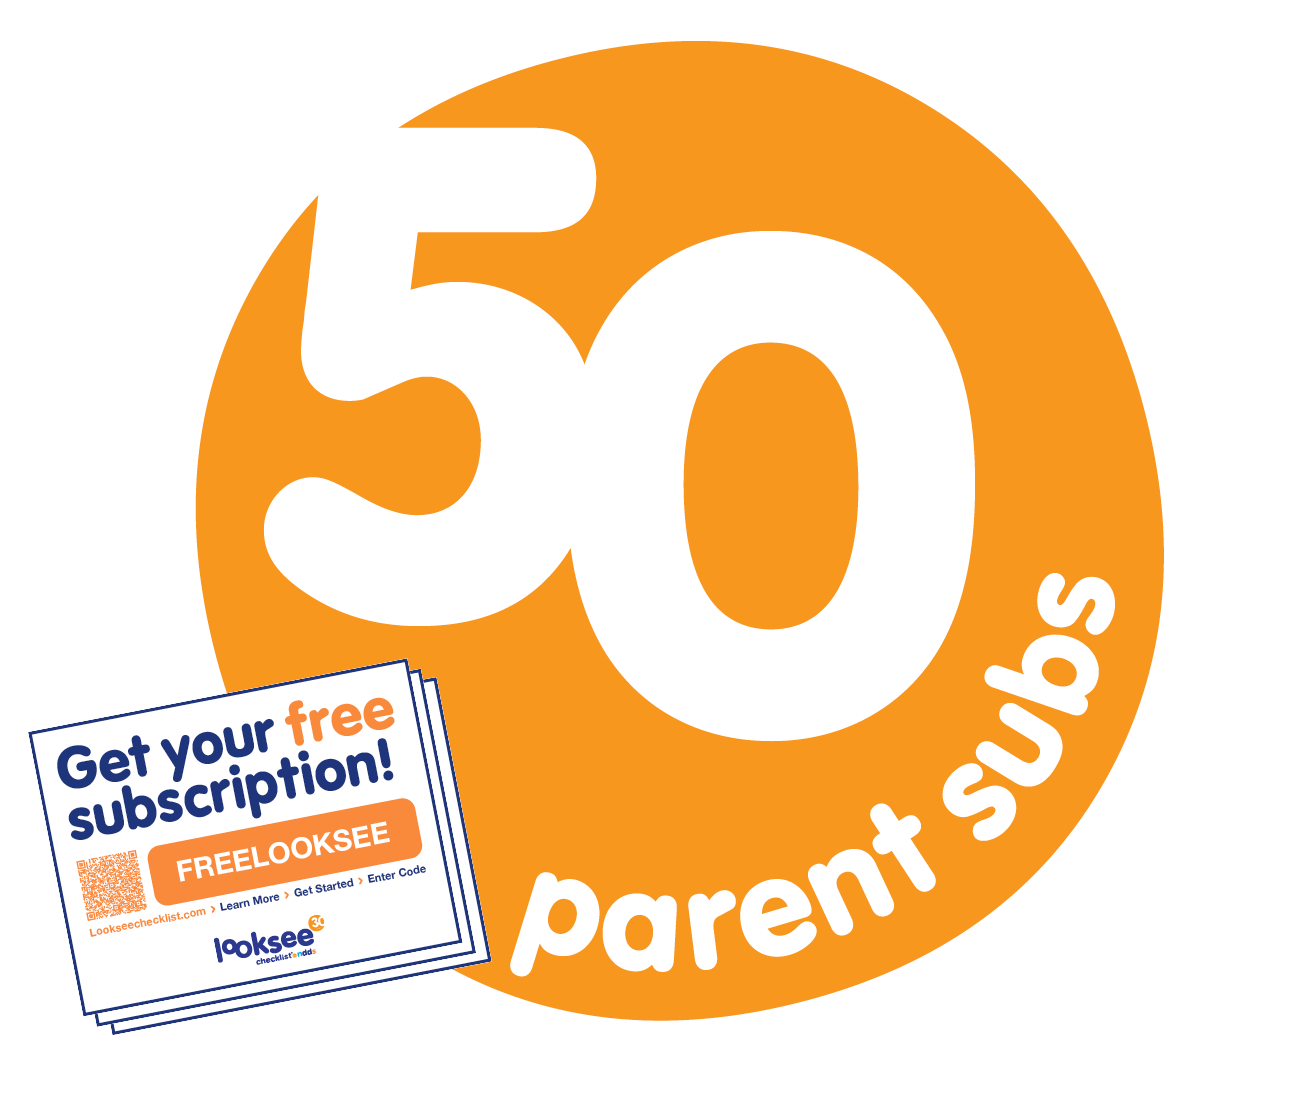 Les professionnels peuvent acheter 50 codes d’accès pour parents à distribuer.